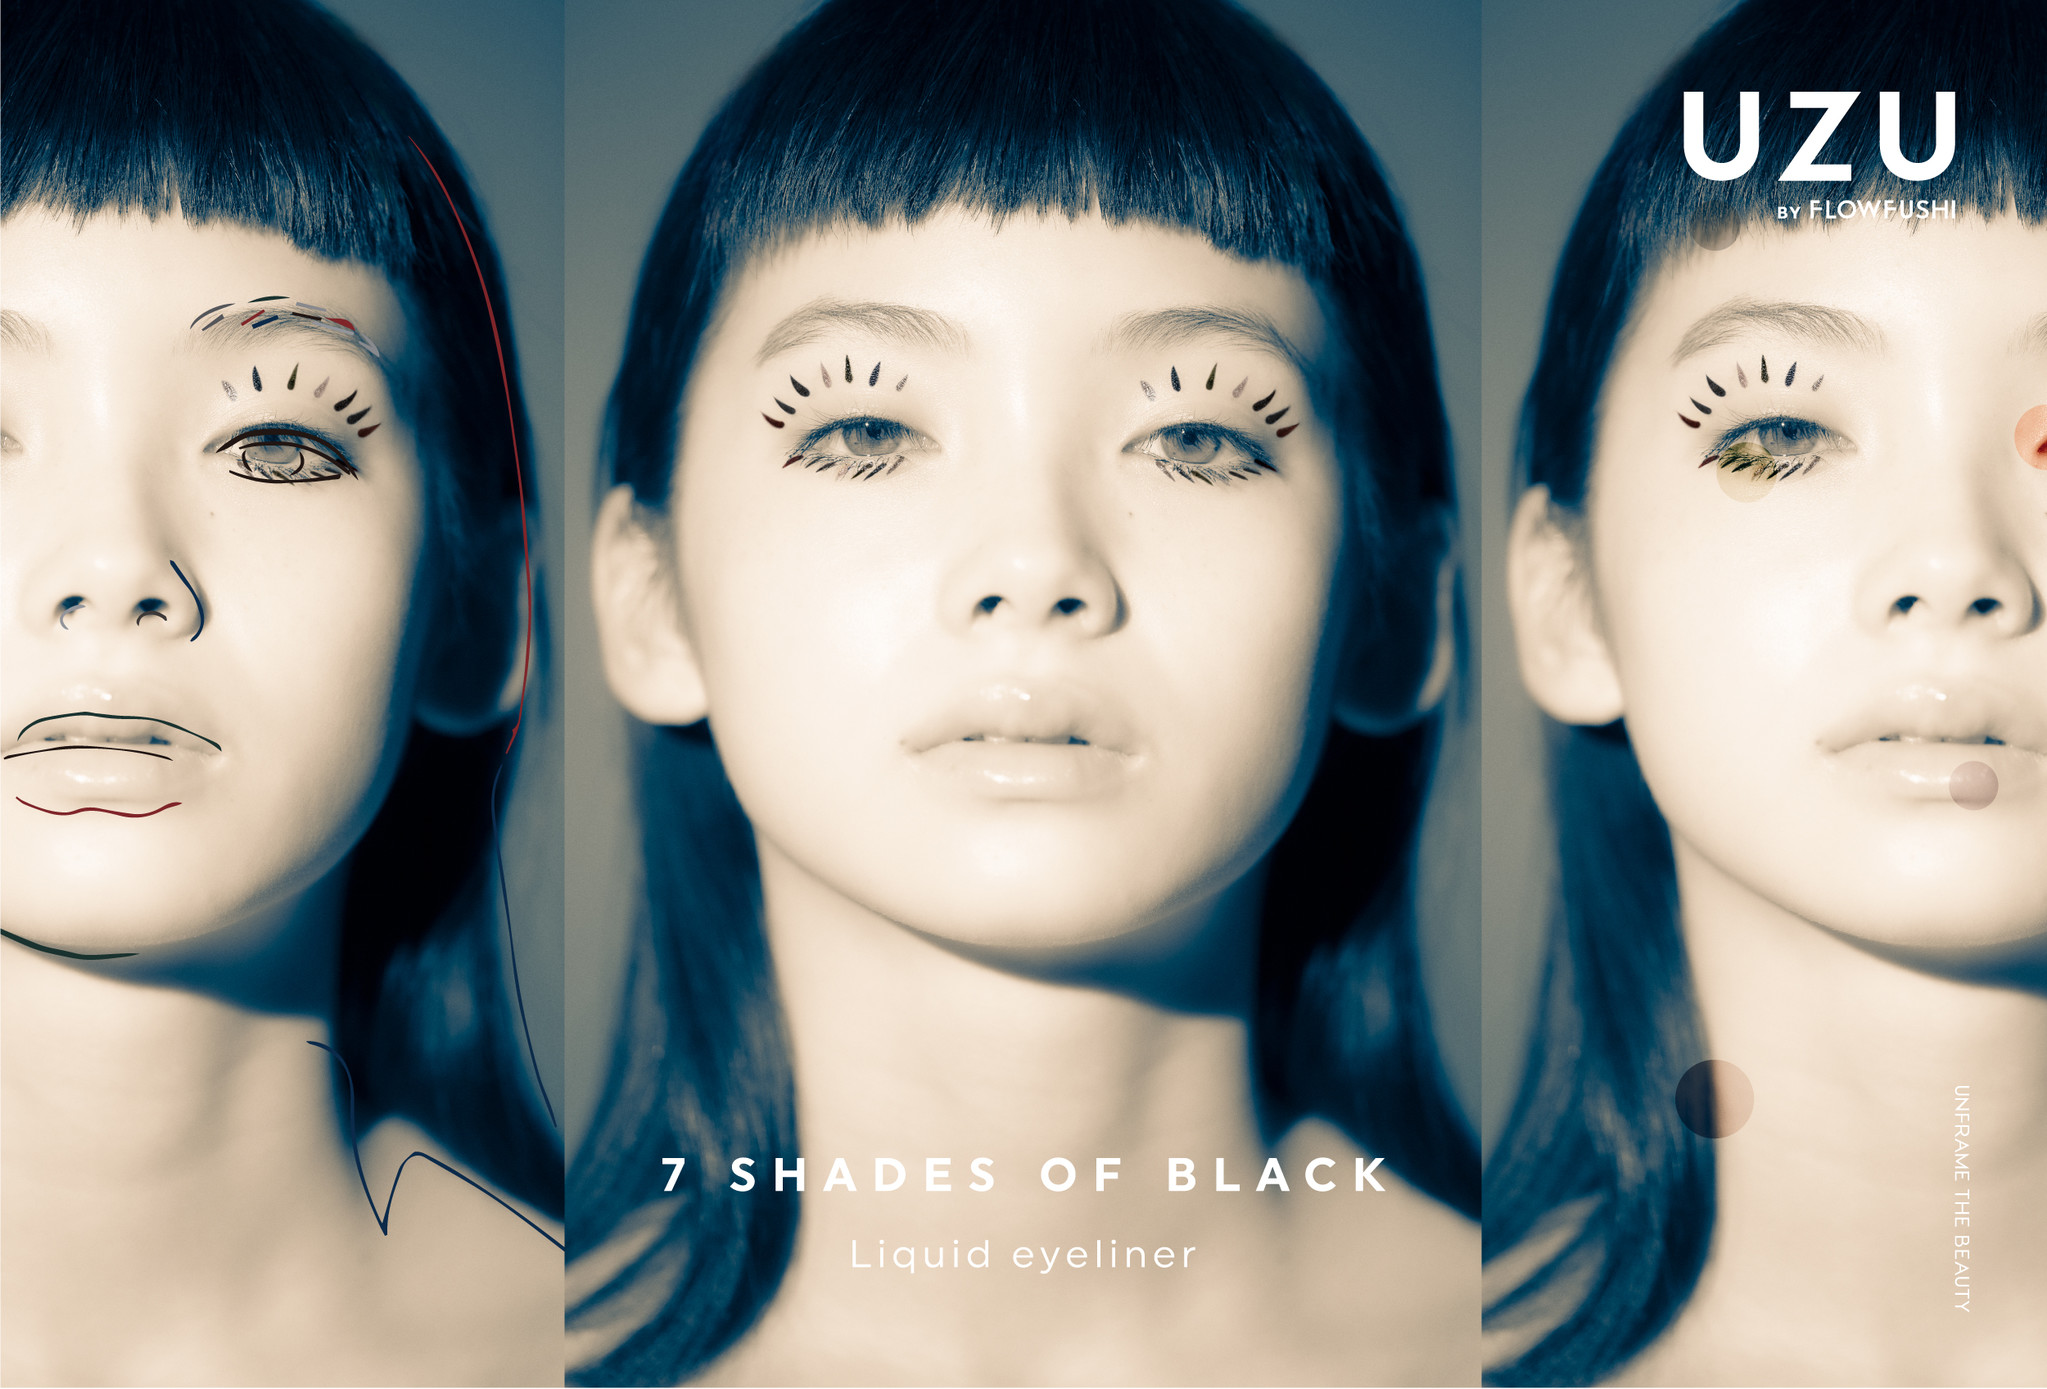 特別な7つの黒。究極のカラフル。」UZU アイオープニングライナー 7 SHADES OF BLACK 2021年1月10日 全国発売開始｜フローフシ のプレスリリース